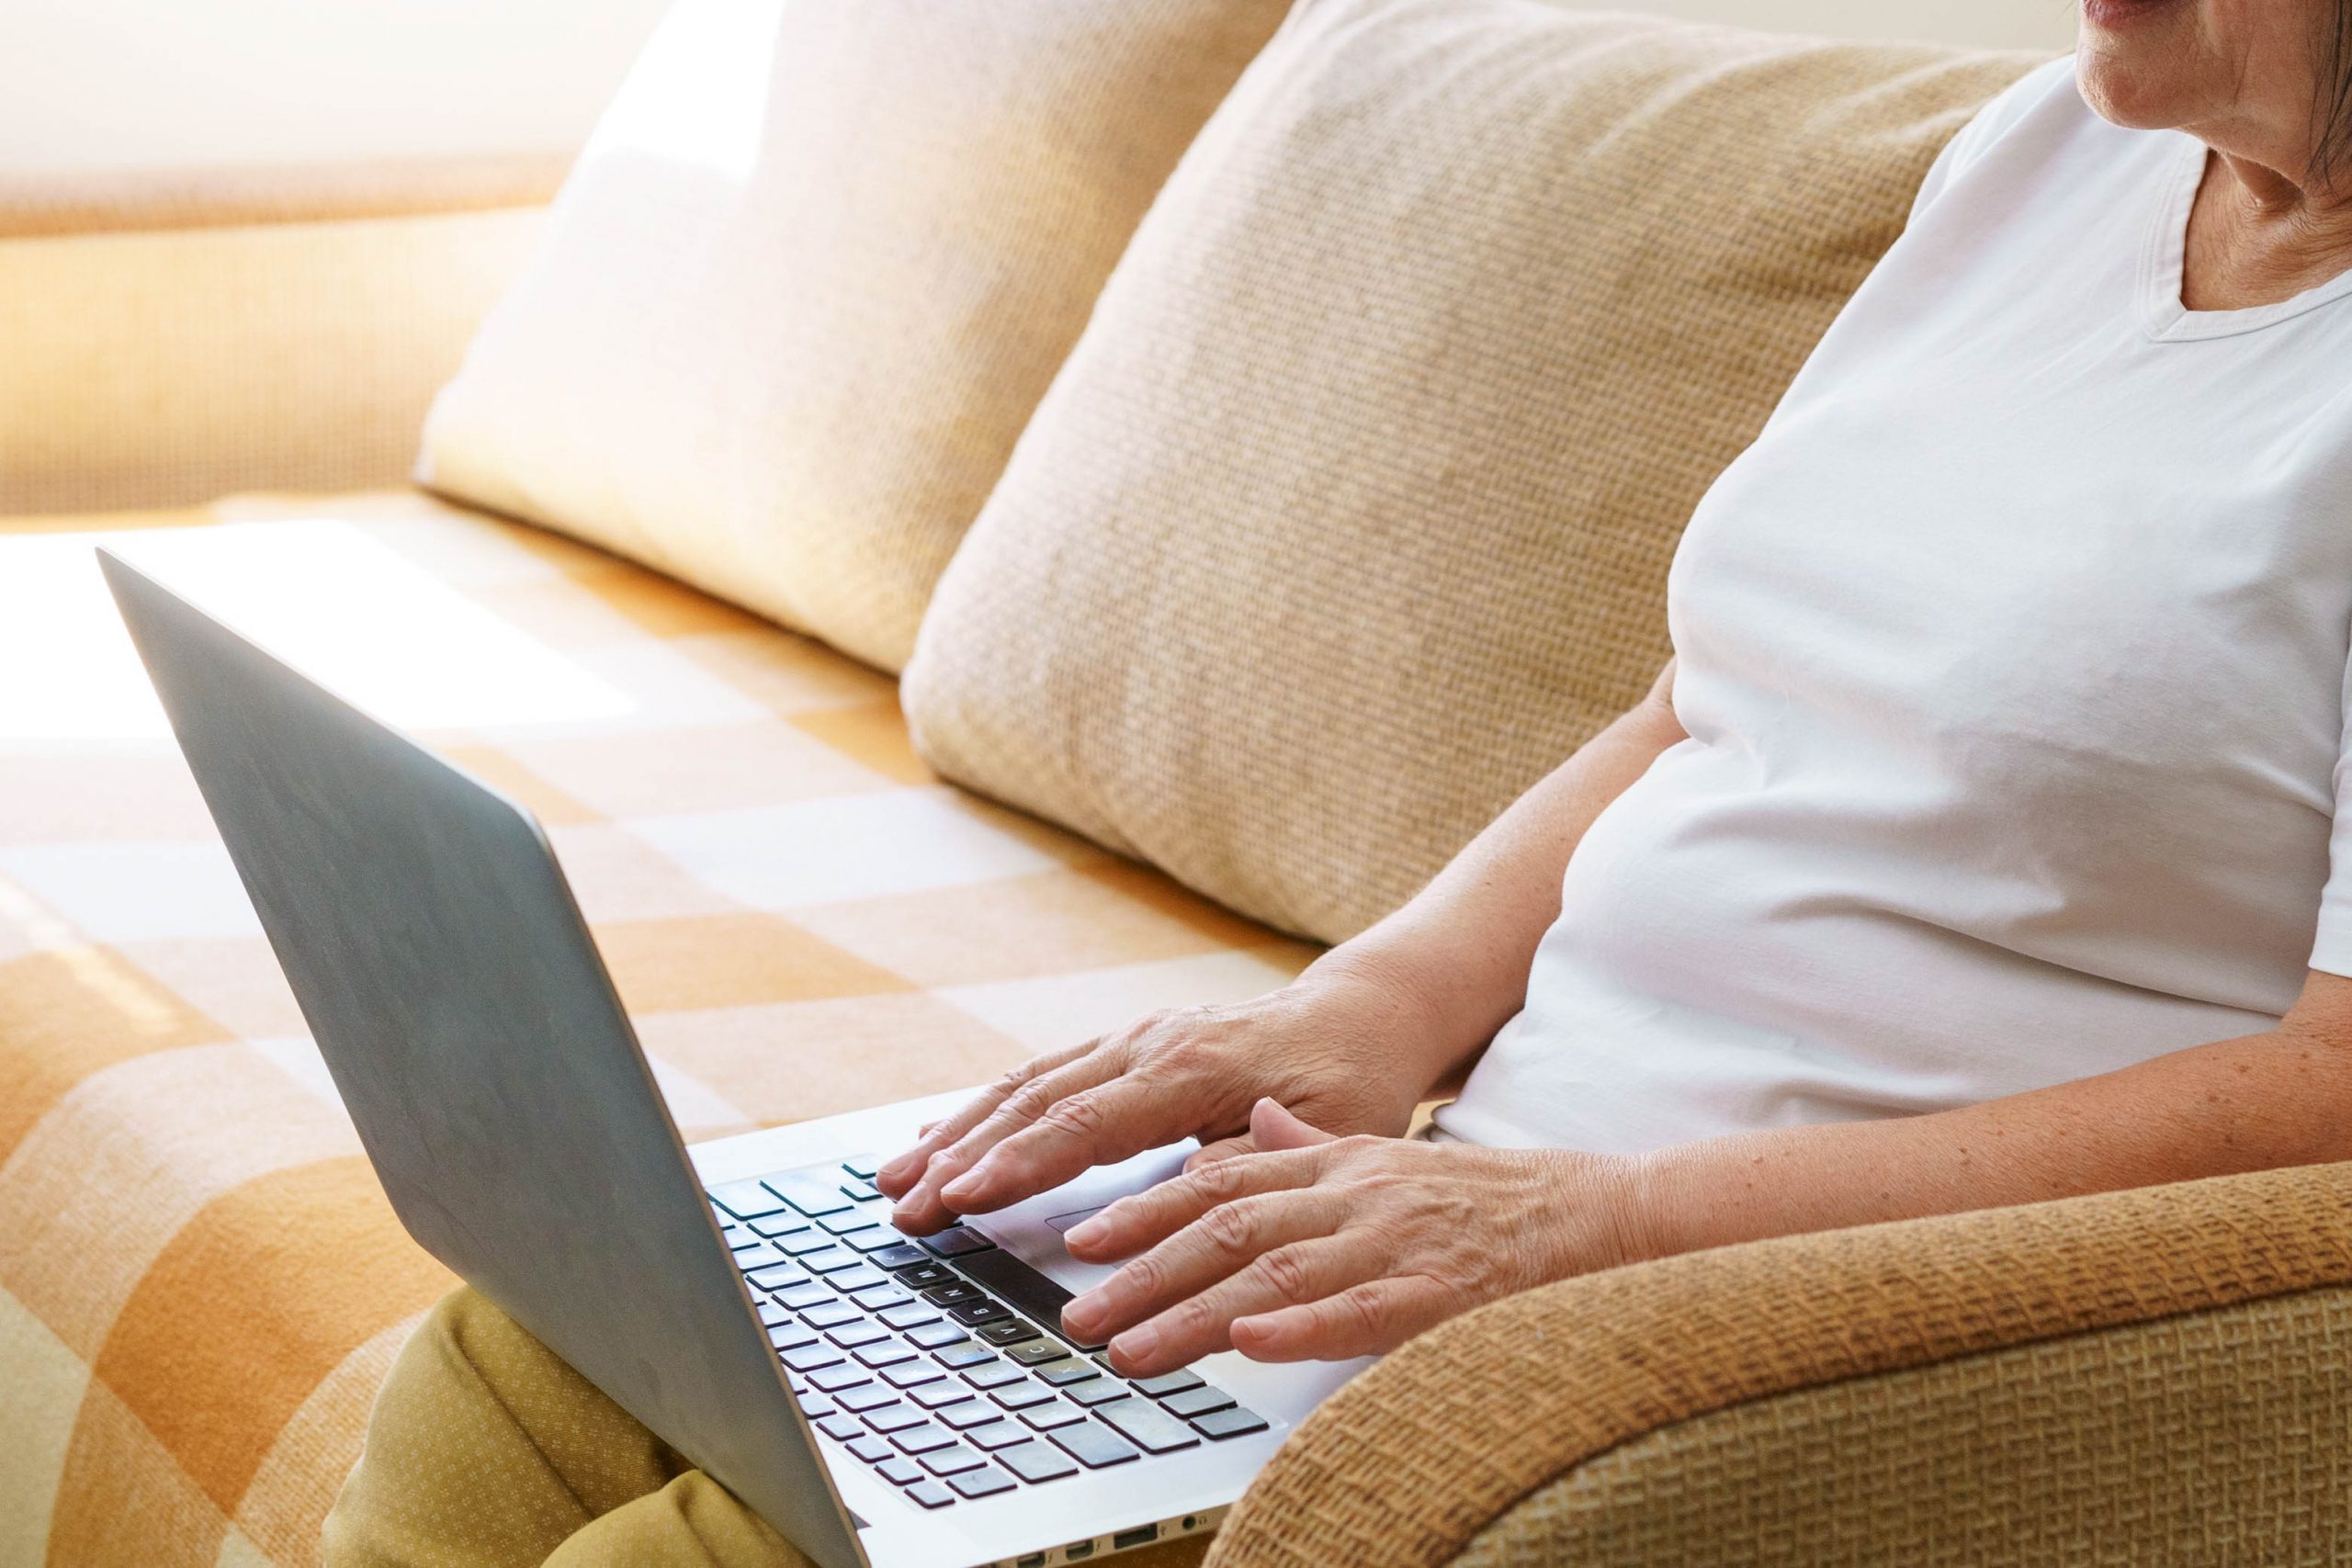 .אישה מבוגרת יושבת על ספה ומחזיקה על ברכיה מחשב נייד. ידיה מקלידות על גבי המחשב